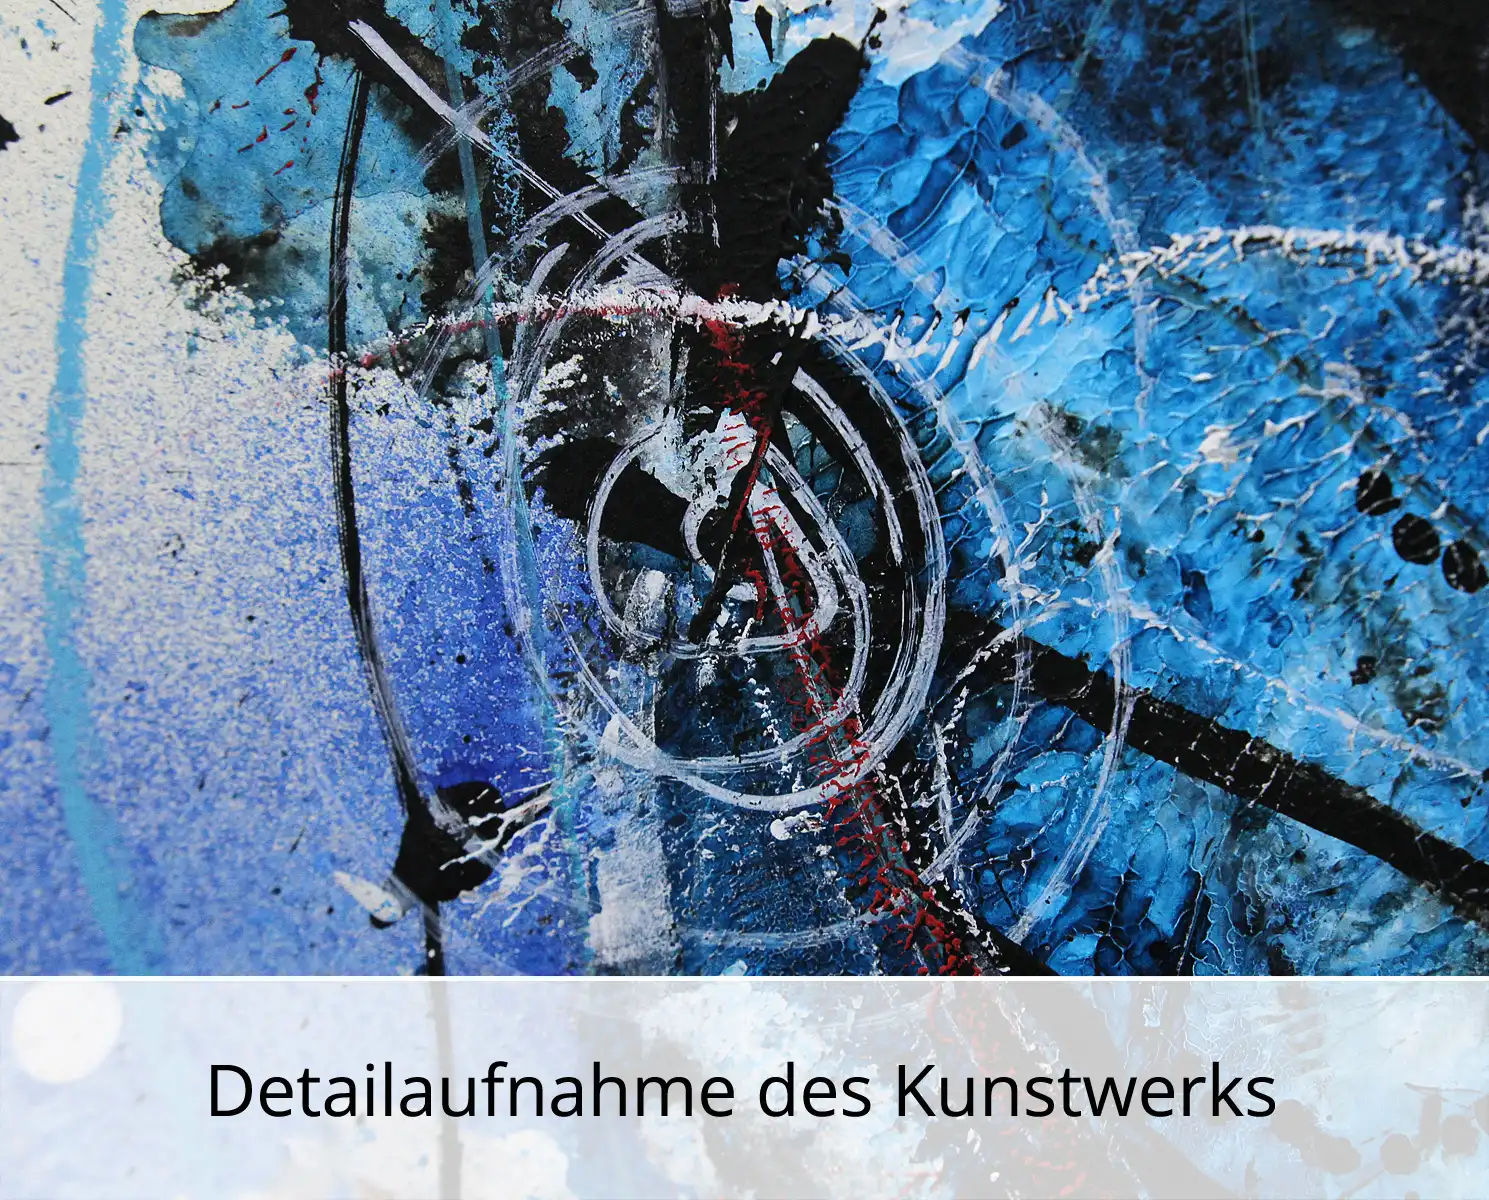 I. Schmidt: "Stadtkatze", zeitgenössische Grafik/Malerei, Original/Unikat